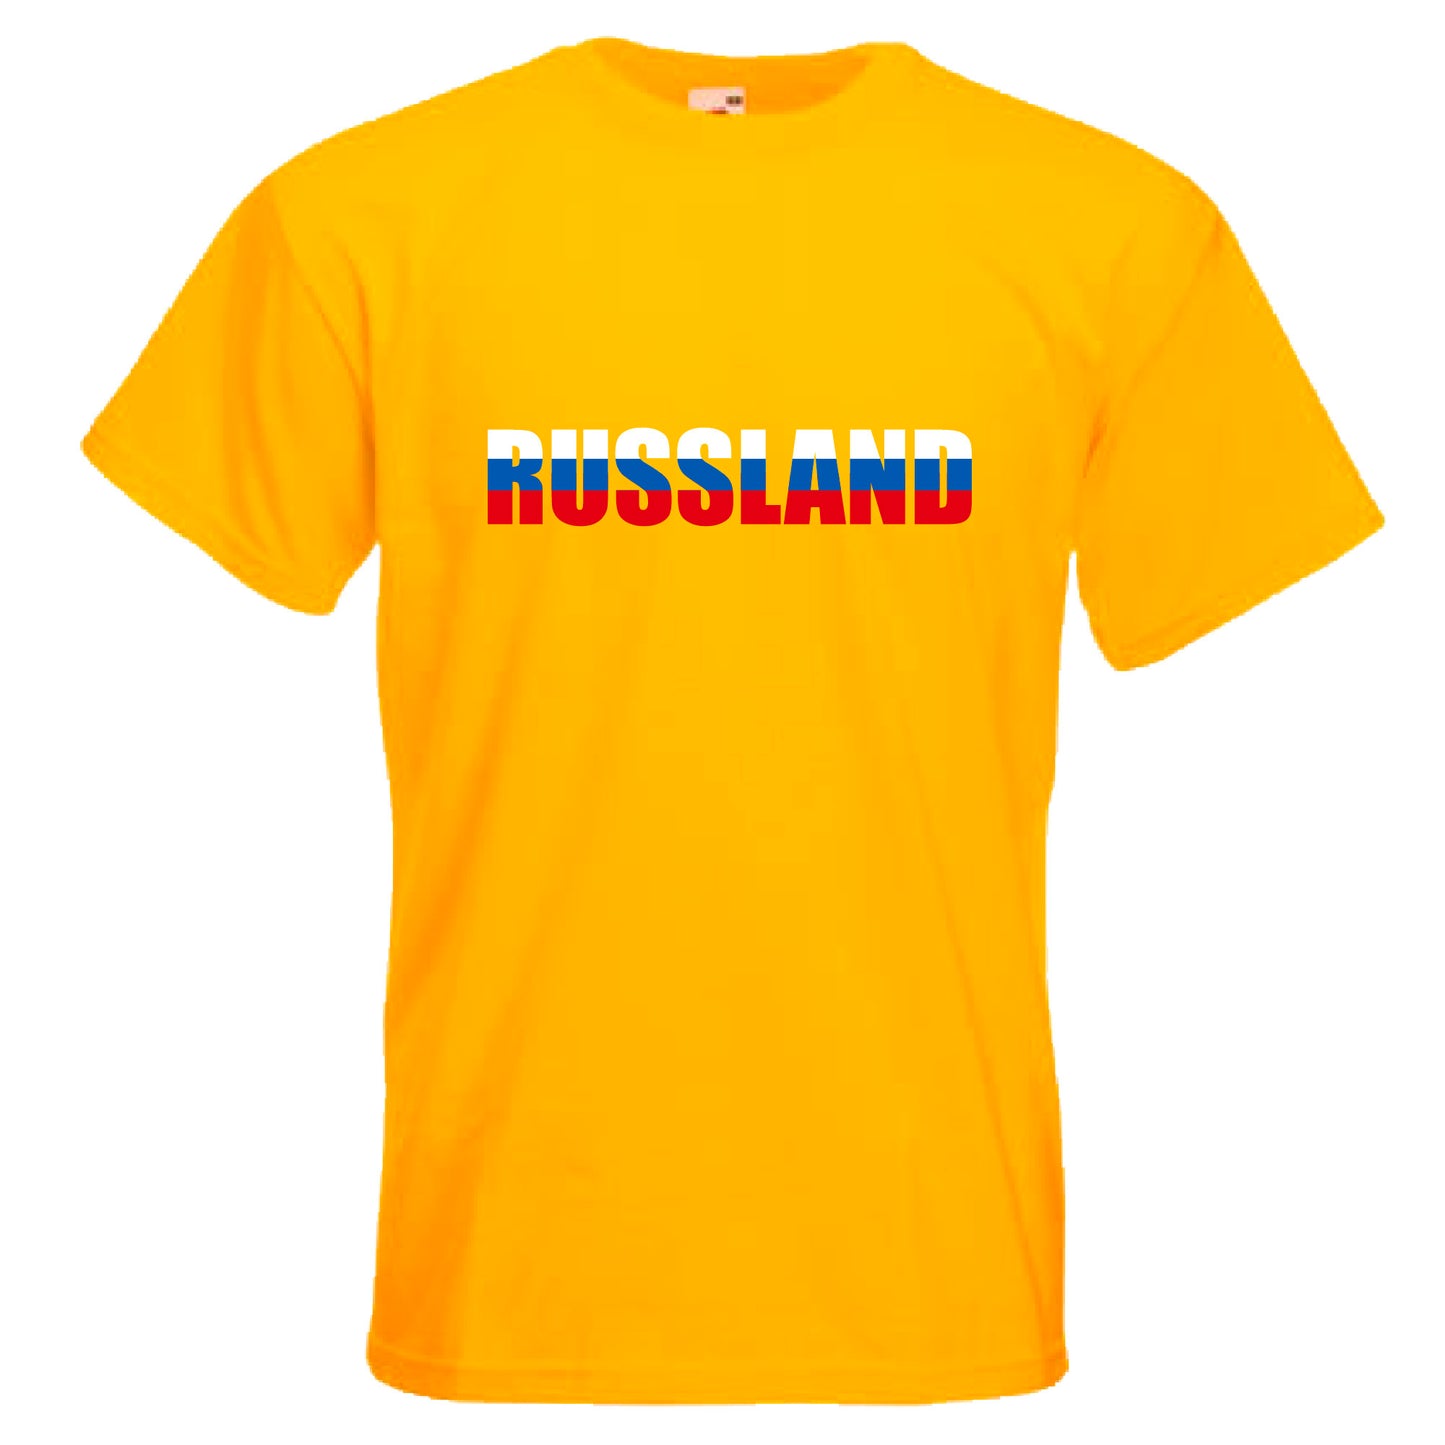 INDIGOS UG - T-Shirt Herren - Russland - Schriftzug - Fussball